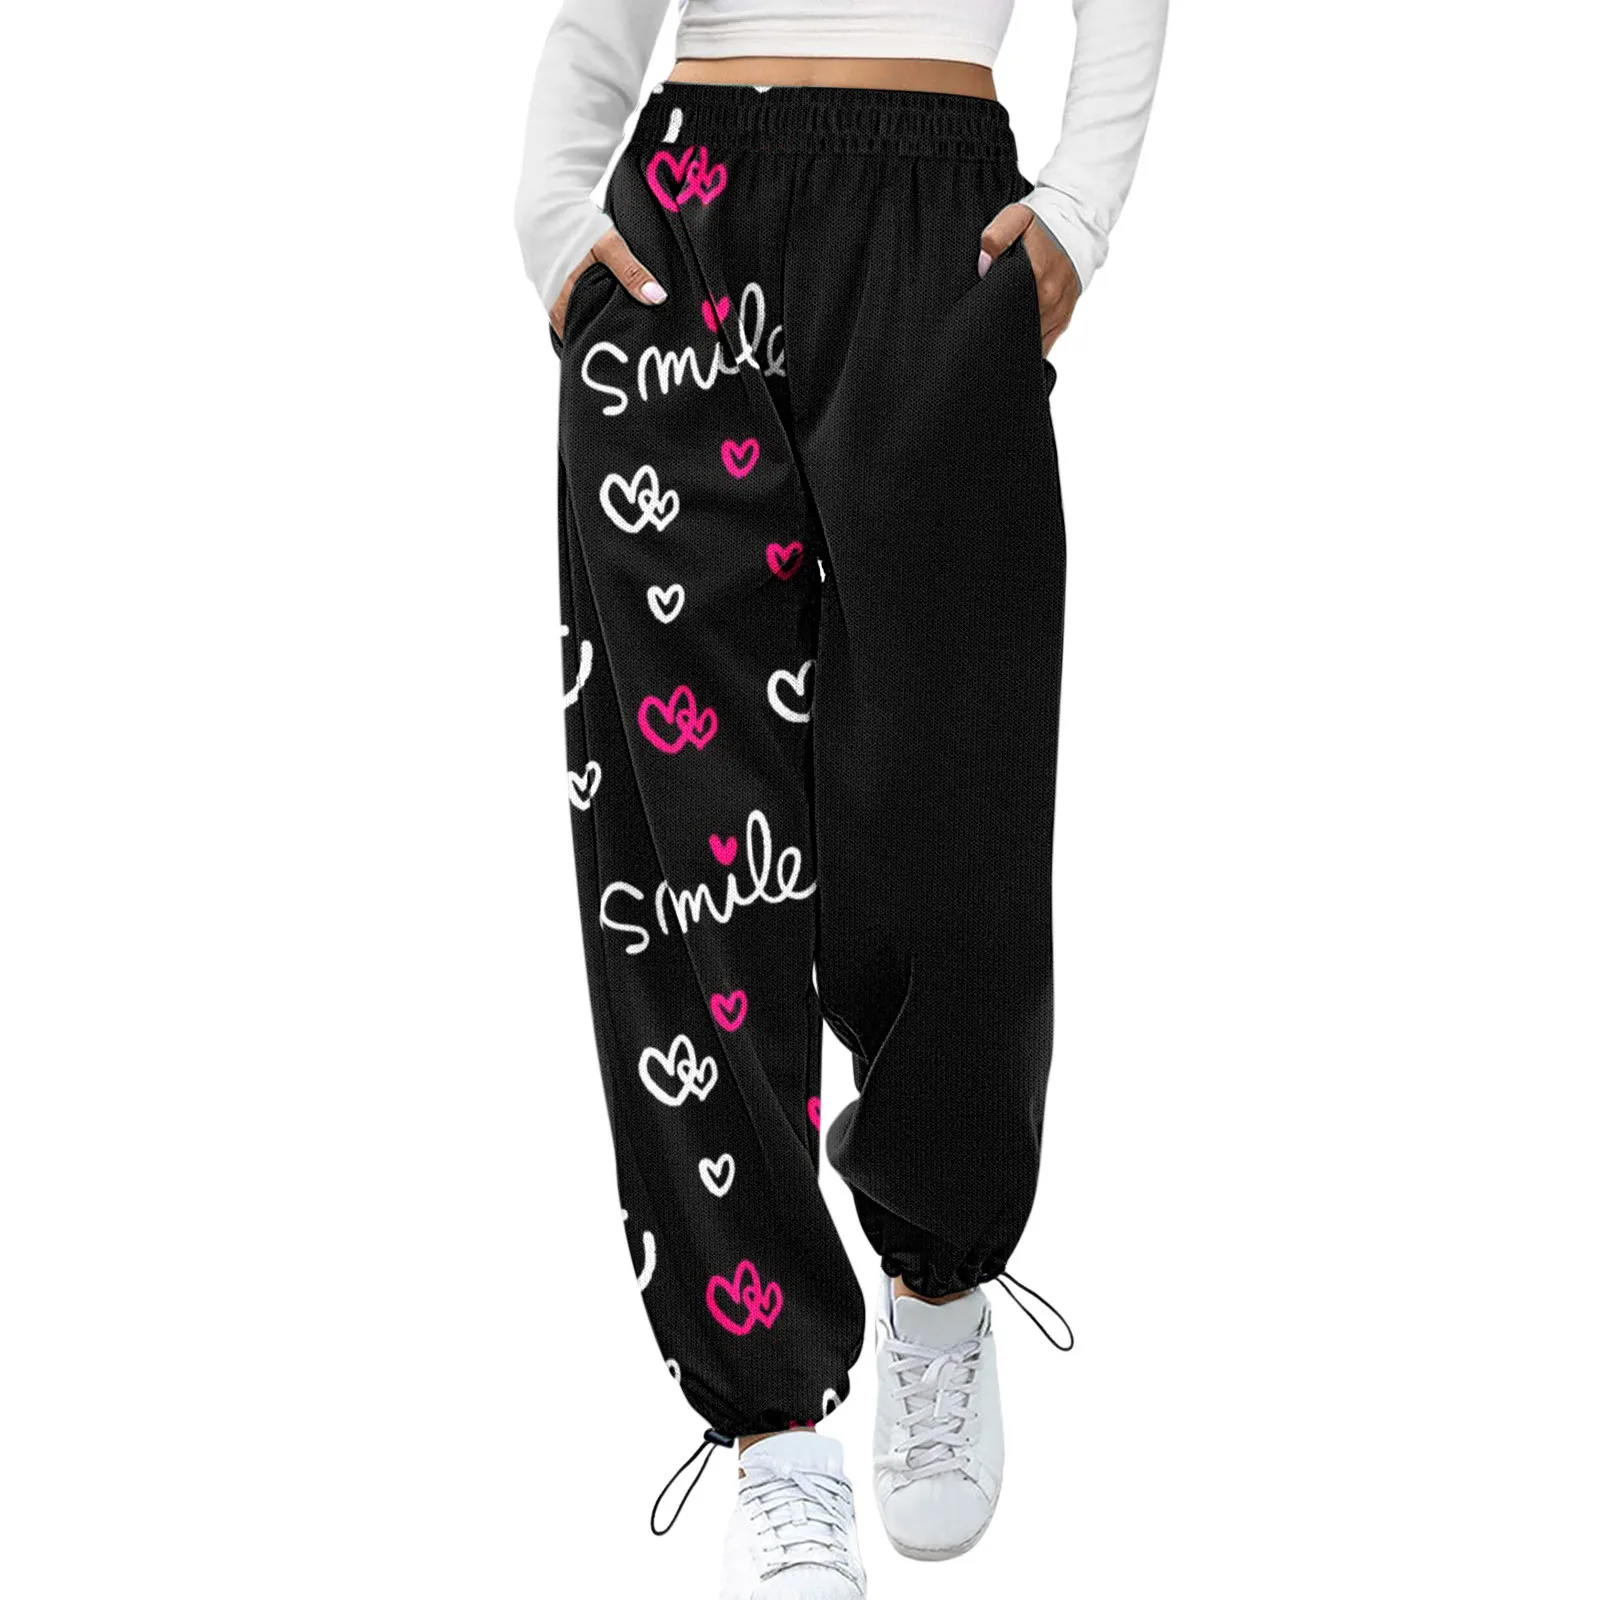 Женские спортивные брюки с графическим рисунком уличная одежда в стиле